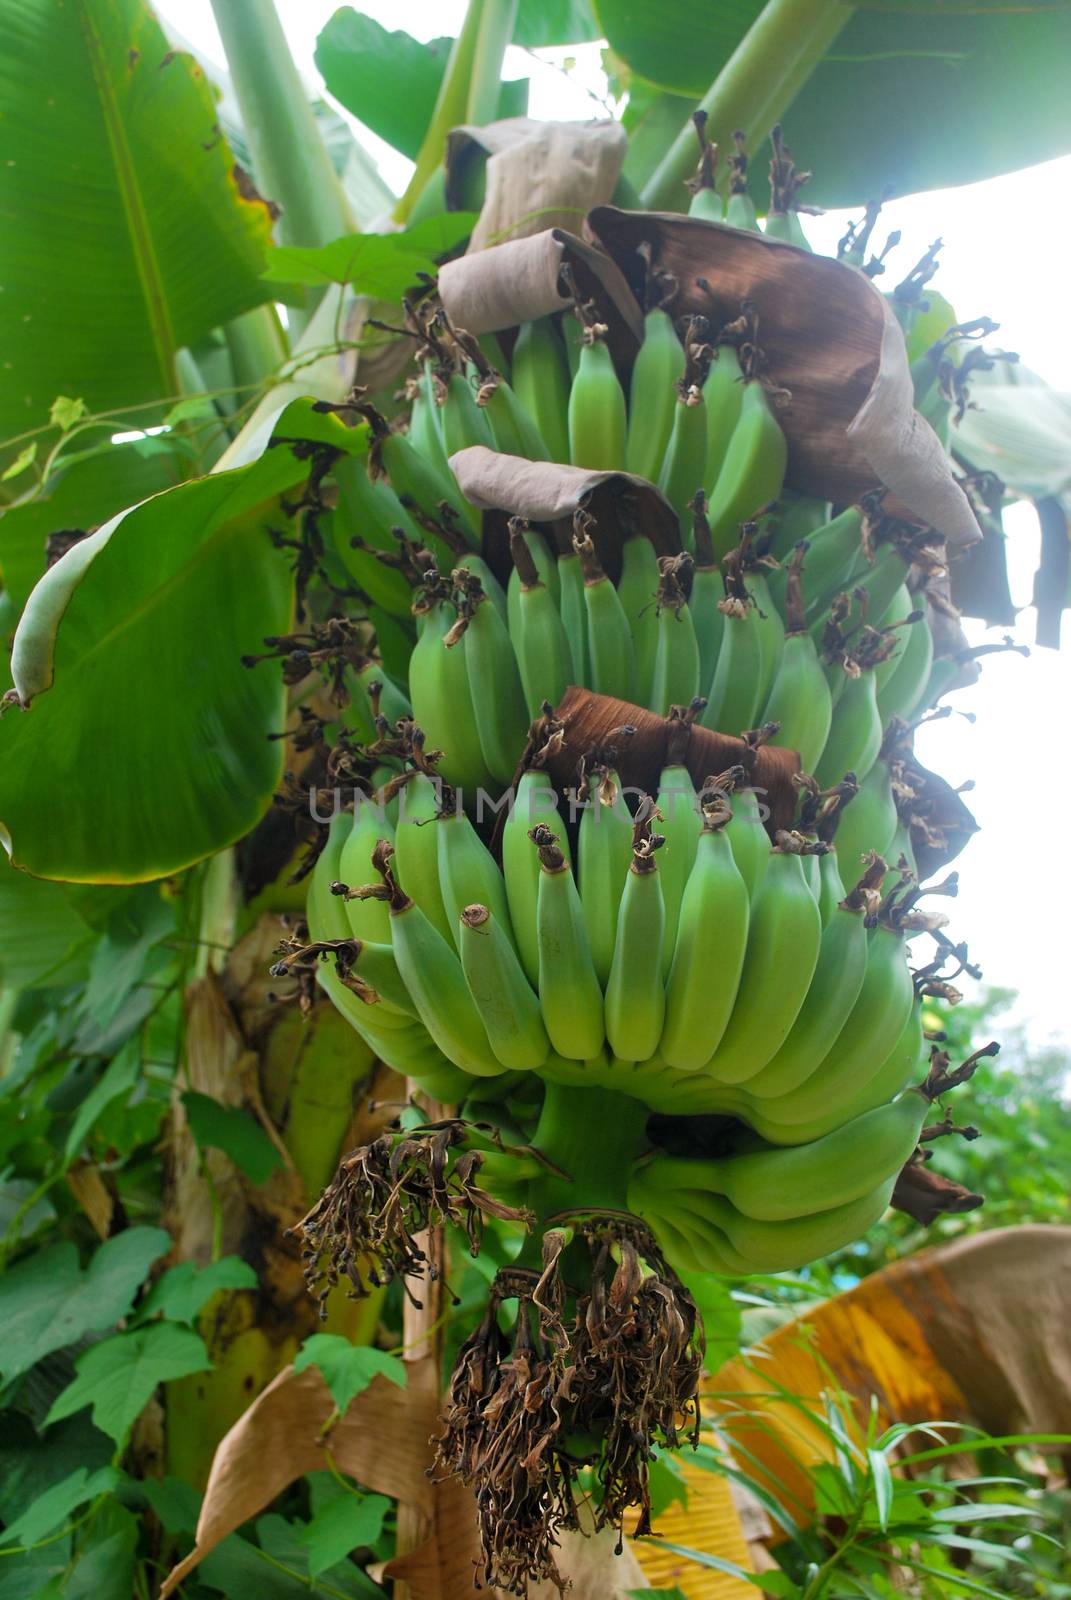 Banana species in Thailand, light green raw banana.